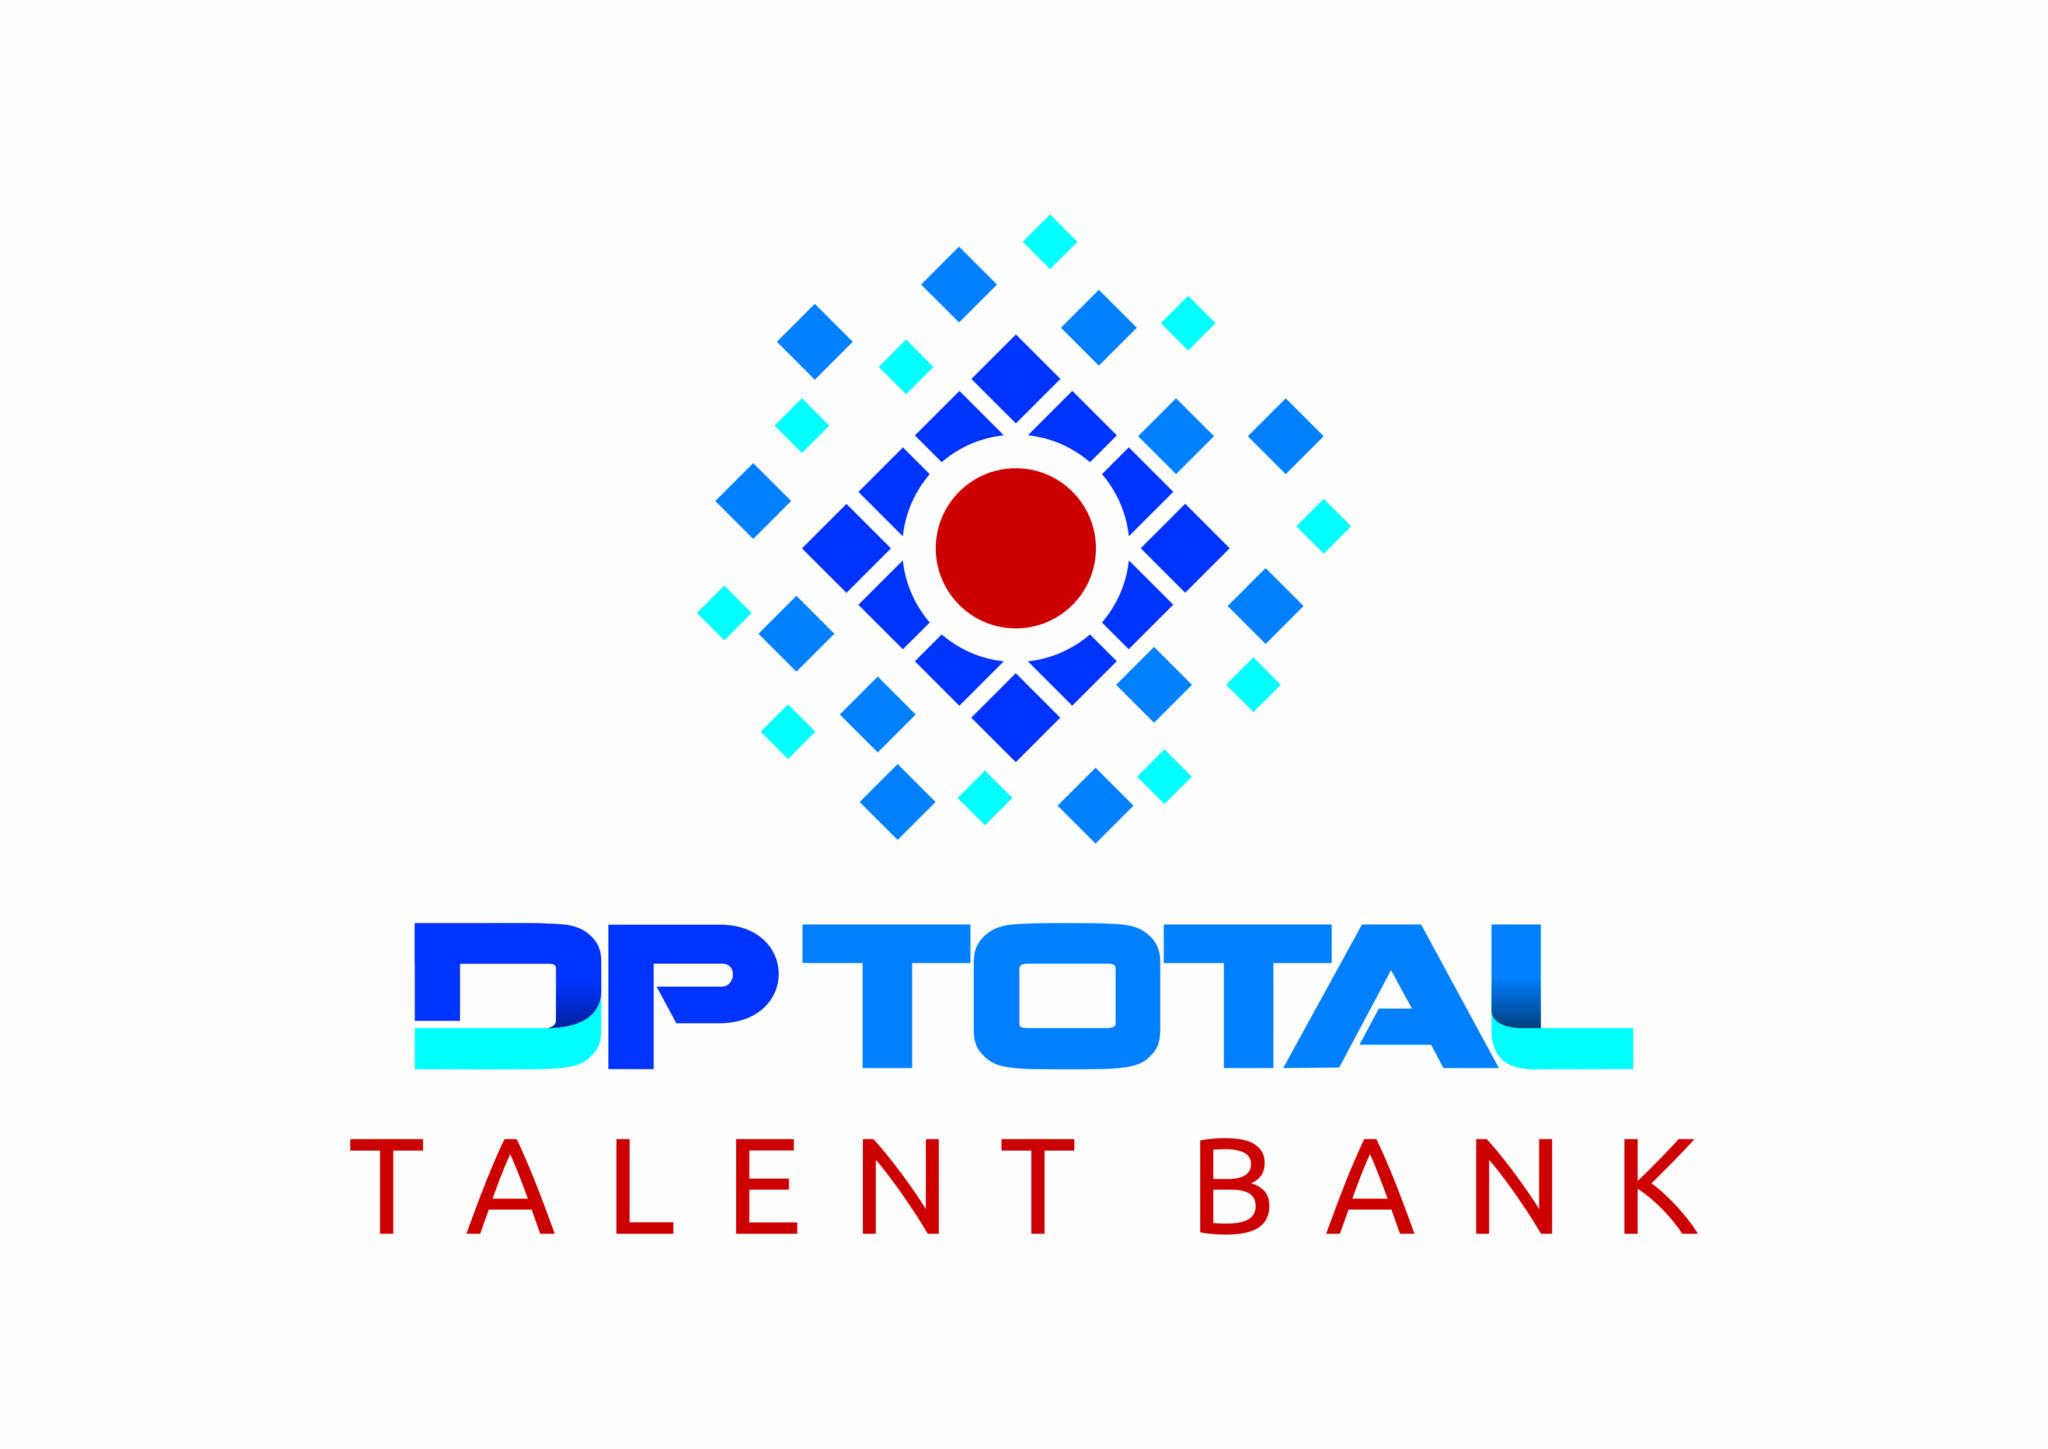 TalentBank